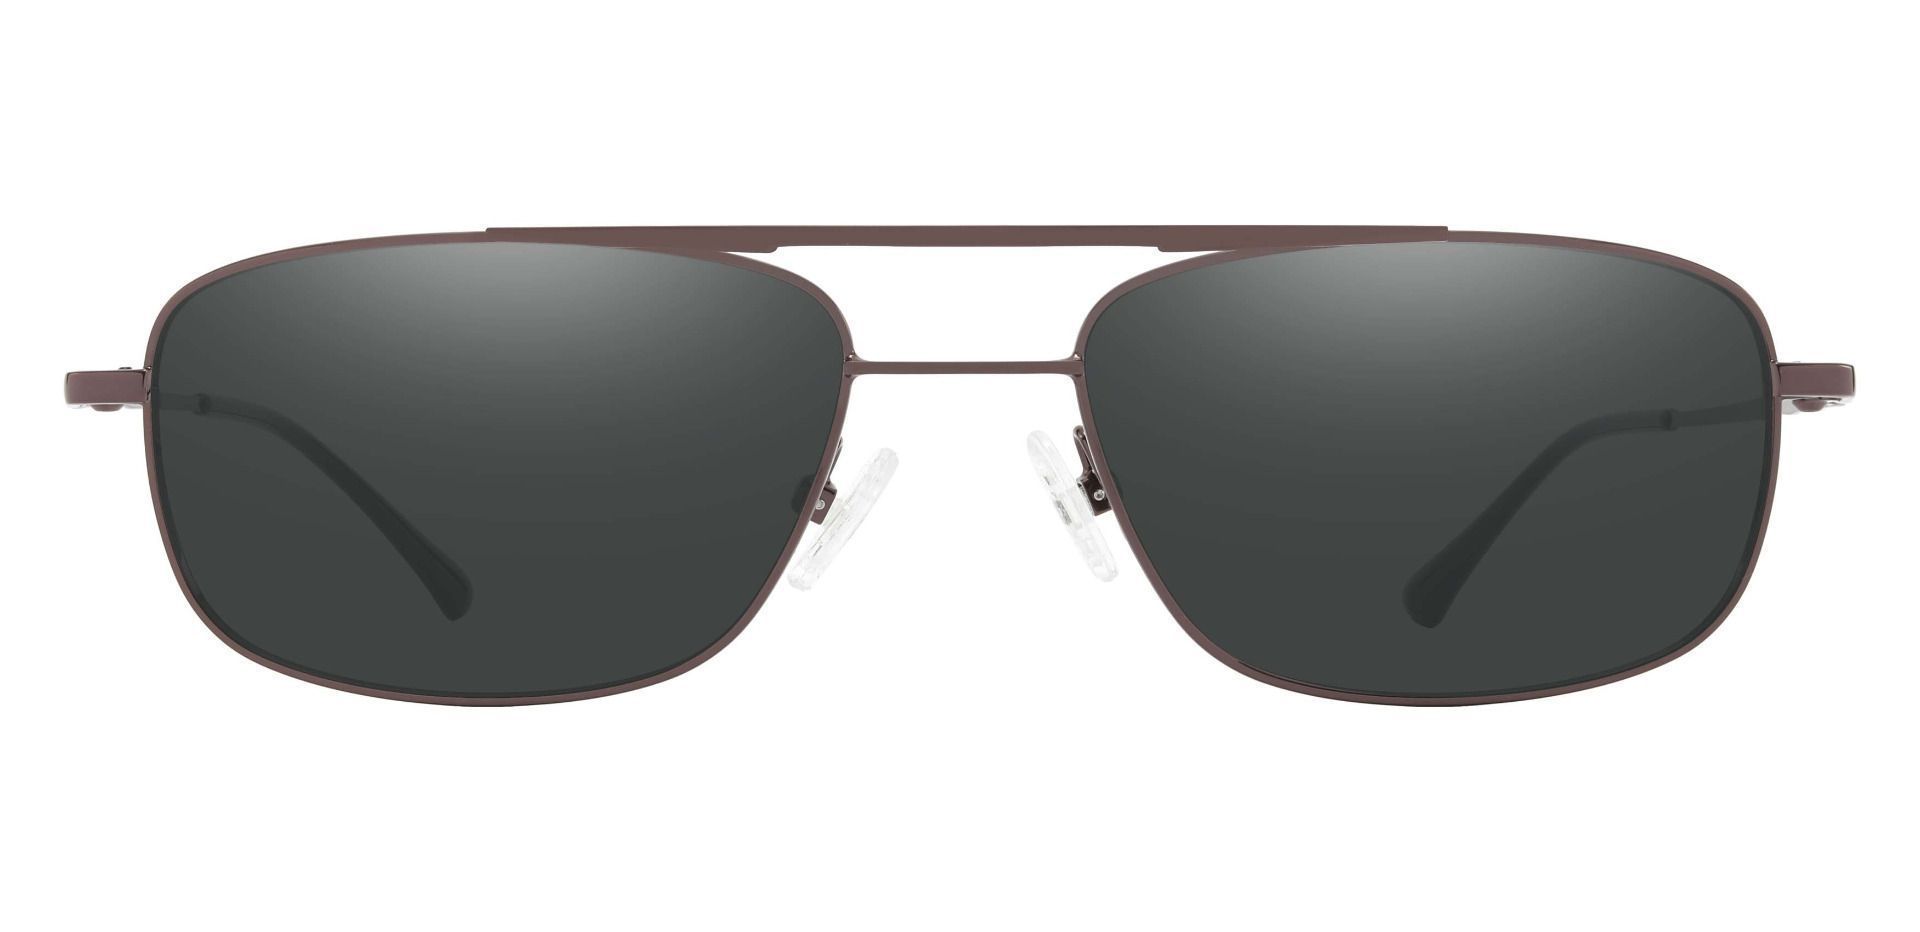 Hugo Aviator Reading Sunglasses - Brown Frame With Gray Lenses